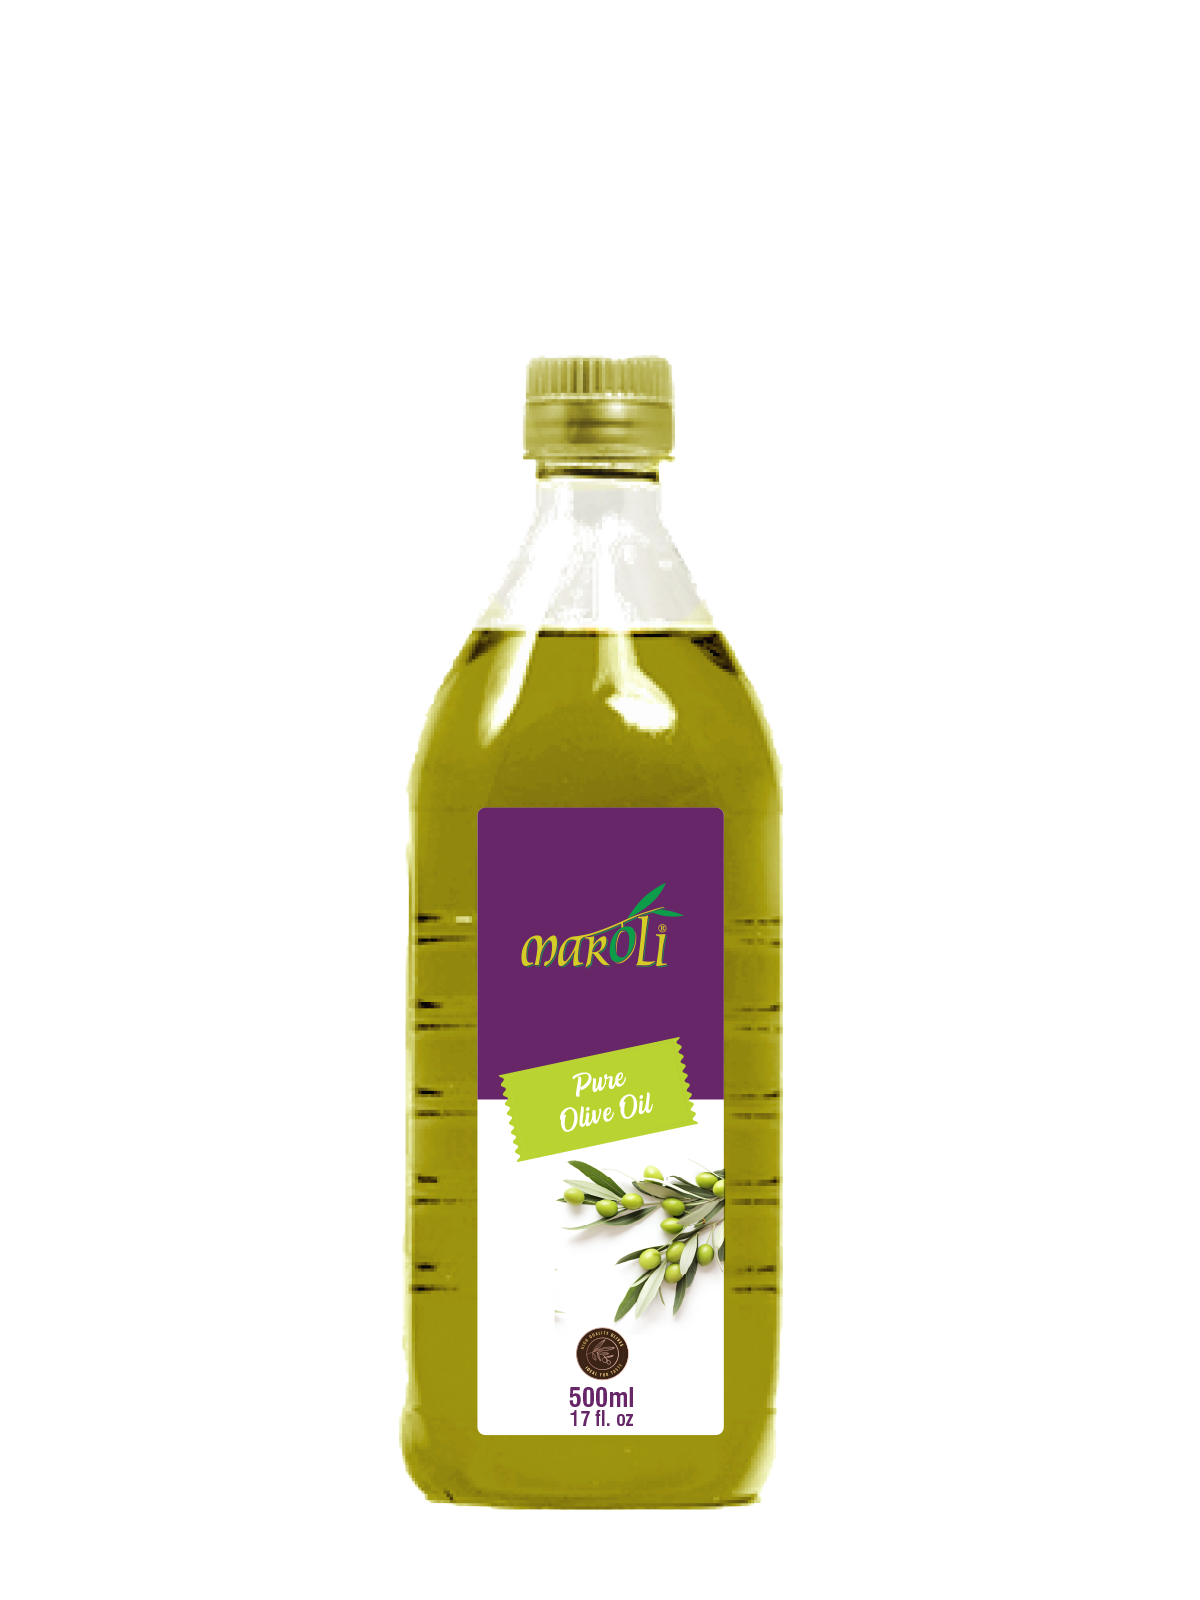 Maroli Olives - Bulk Table Olives Manufacturer in Turkey, Olive Supplier in  Turkey.